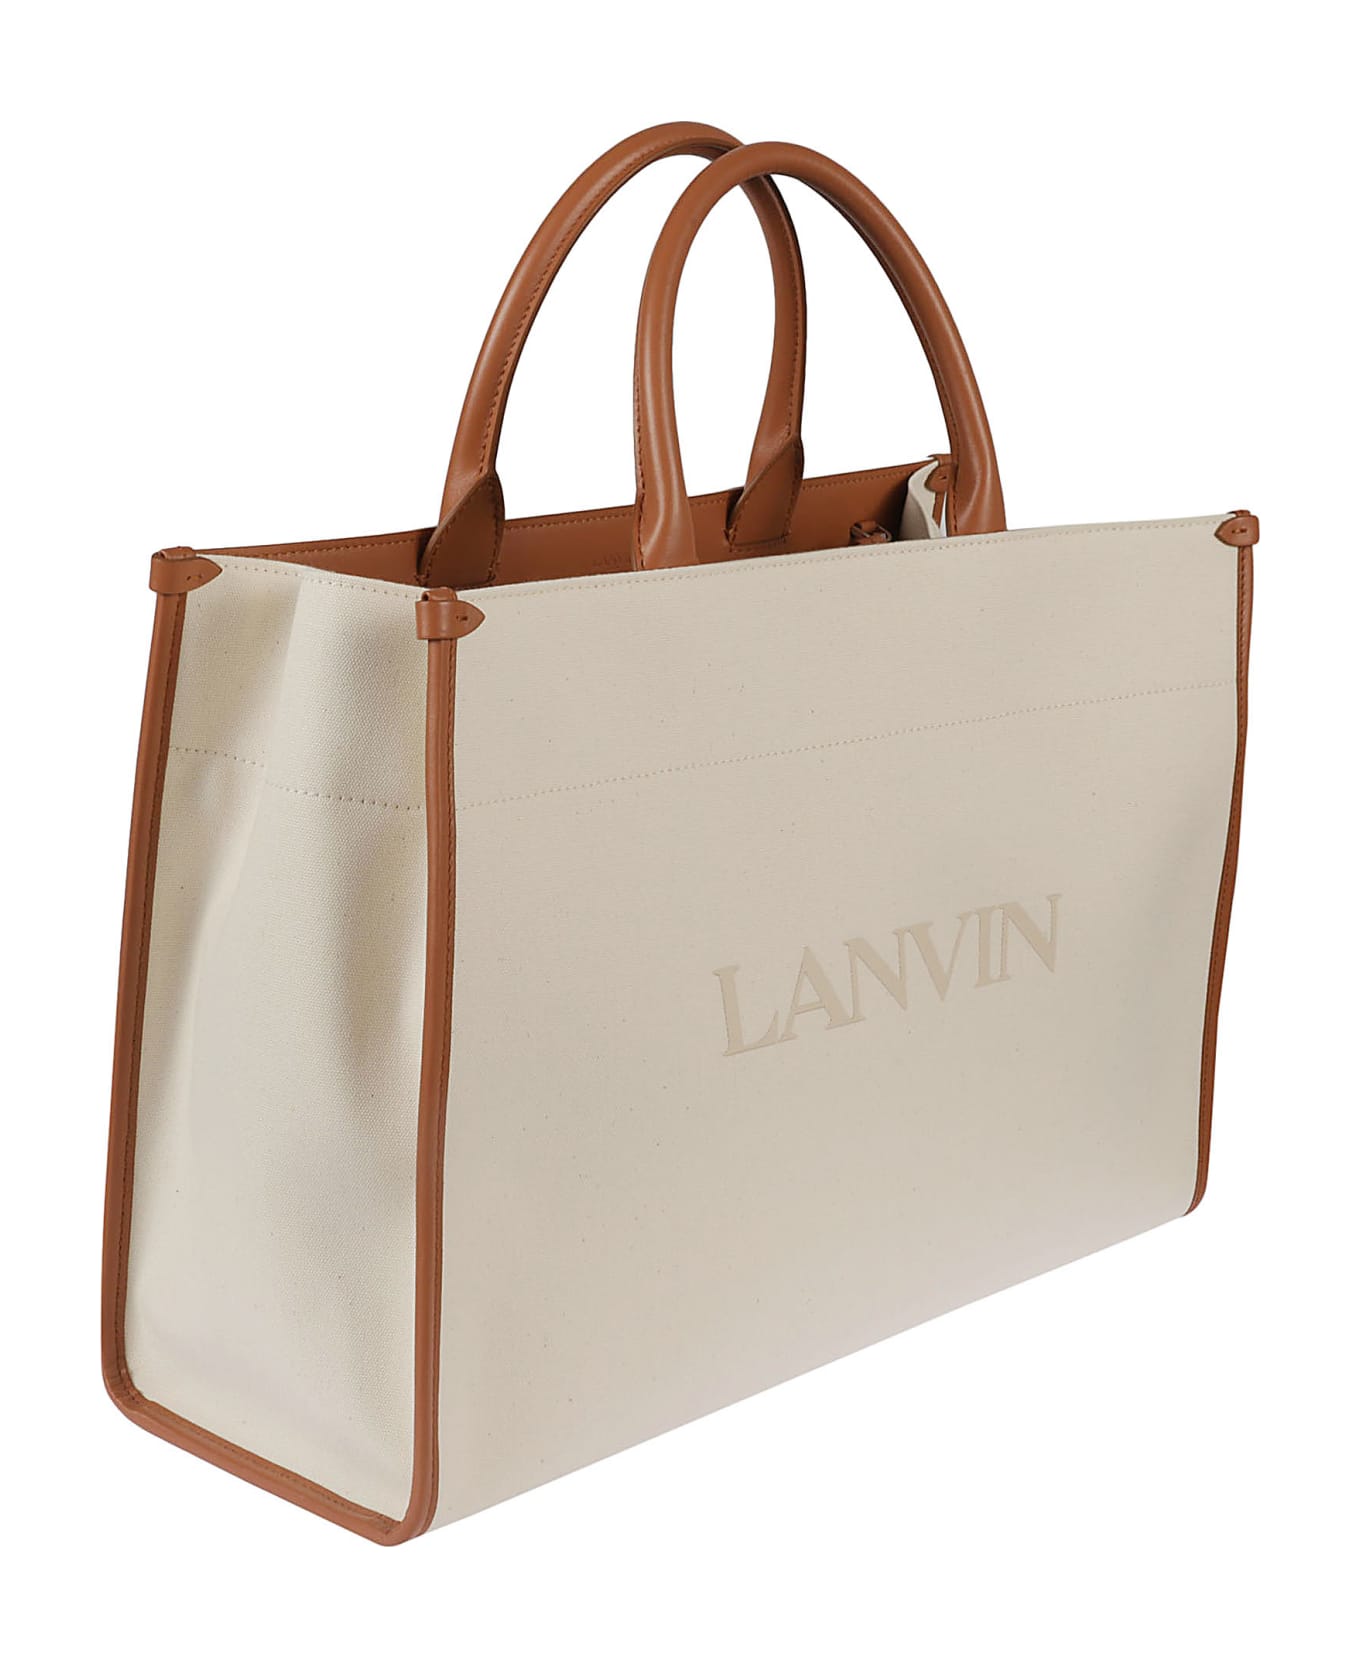 Lanvin Logo Tote - Off-White